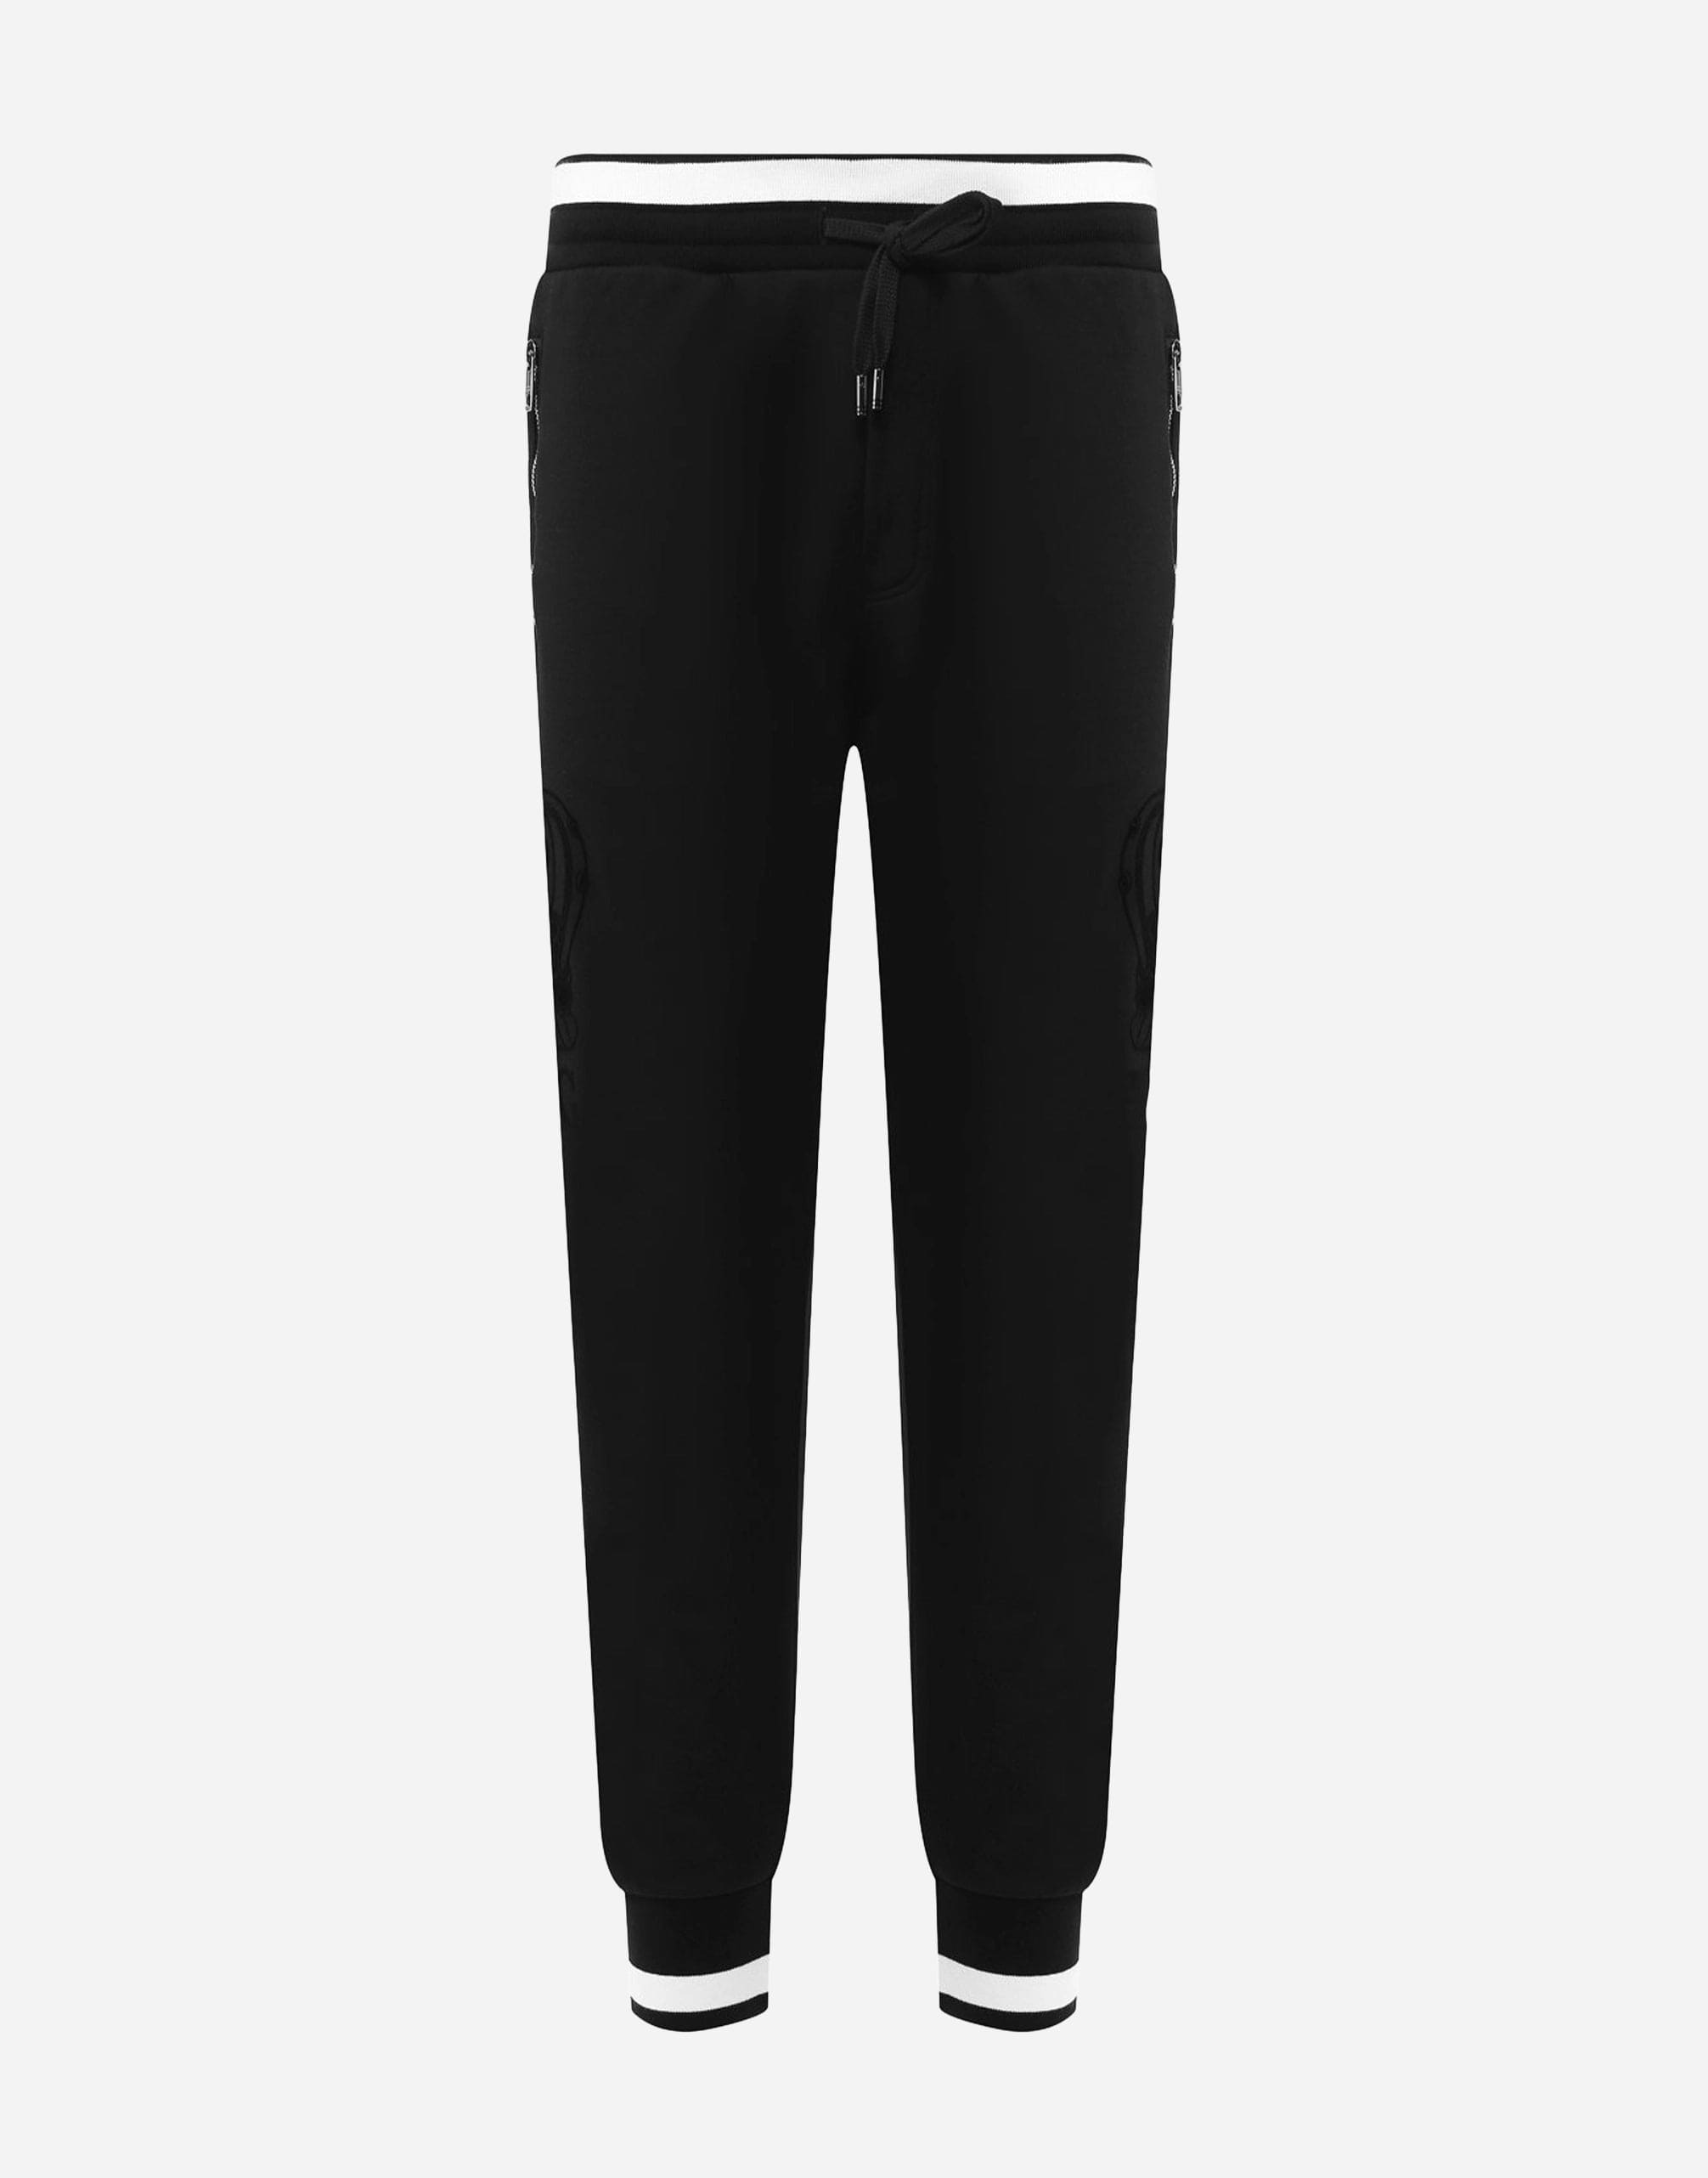 Dolce & Gabbana Black Cotton Logo Sweatpants Jogging Pants